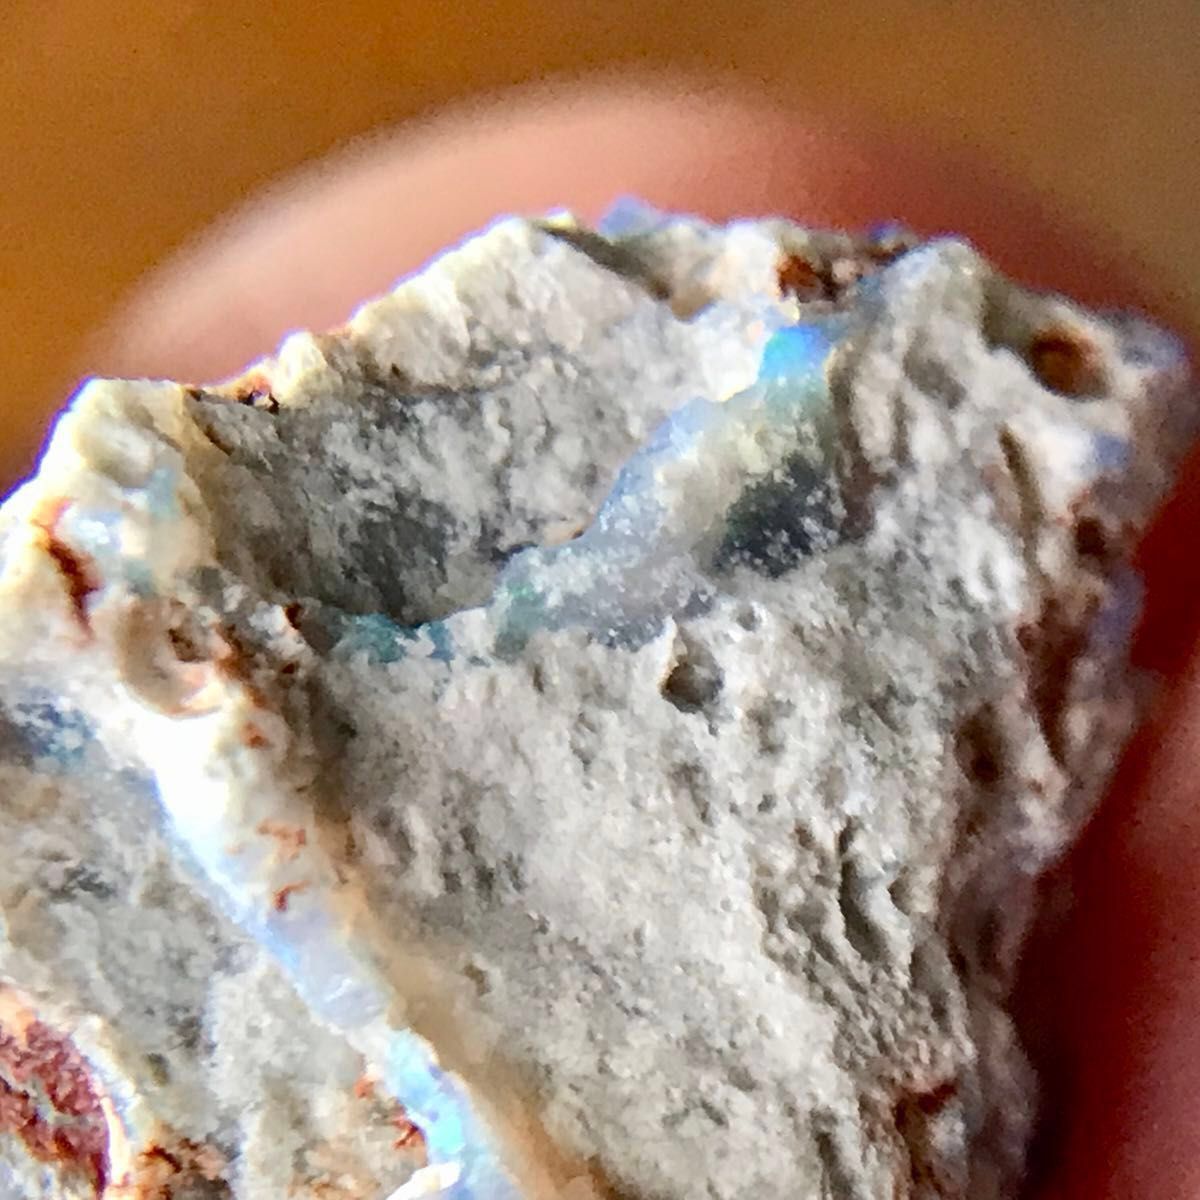 ブラックオパール 3.15ct 宝石 原石 オーストラリア ライトニングリッジ 天然石 オパール コレクション グレイッシュブルー